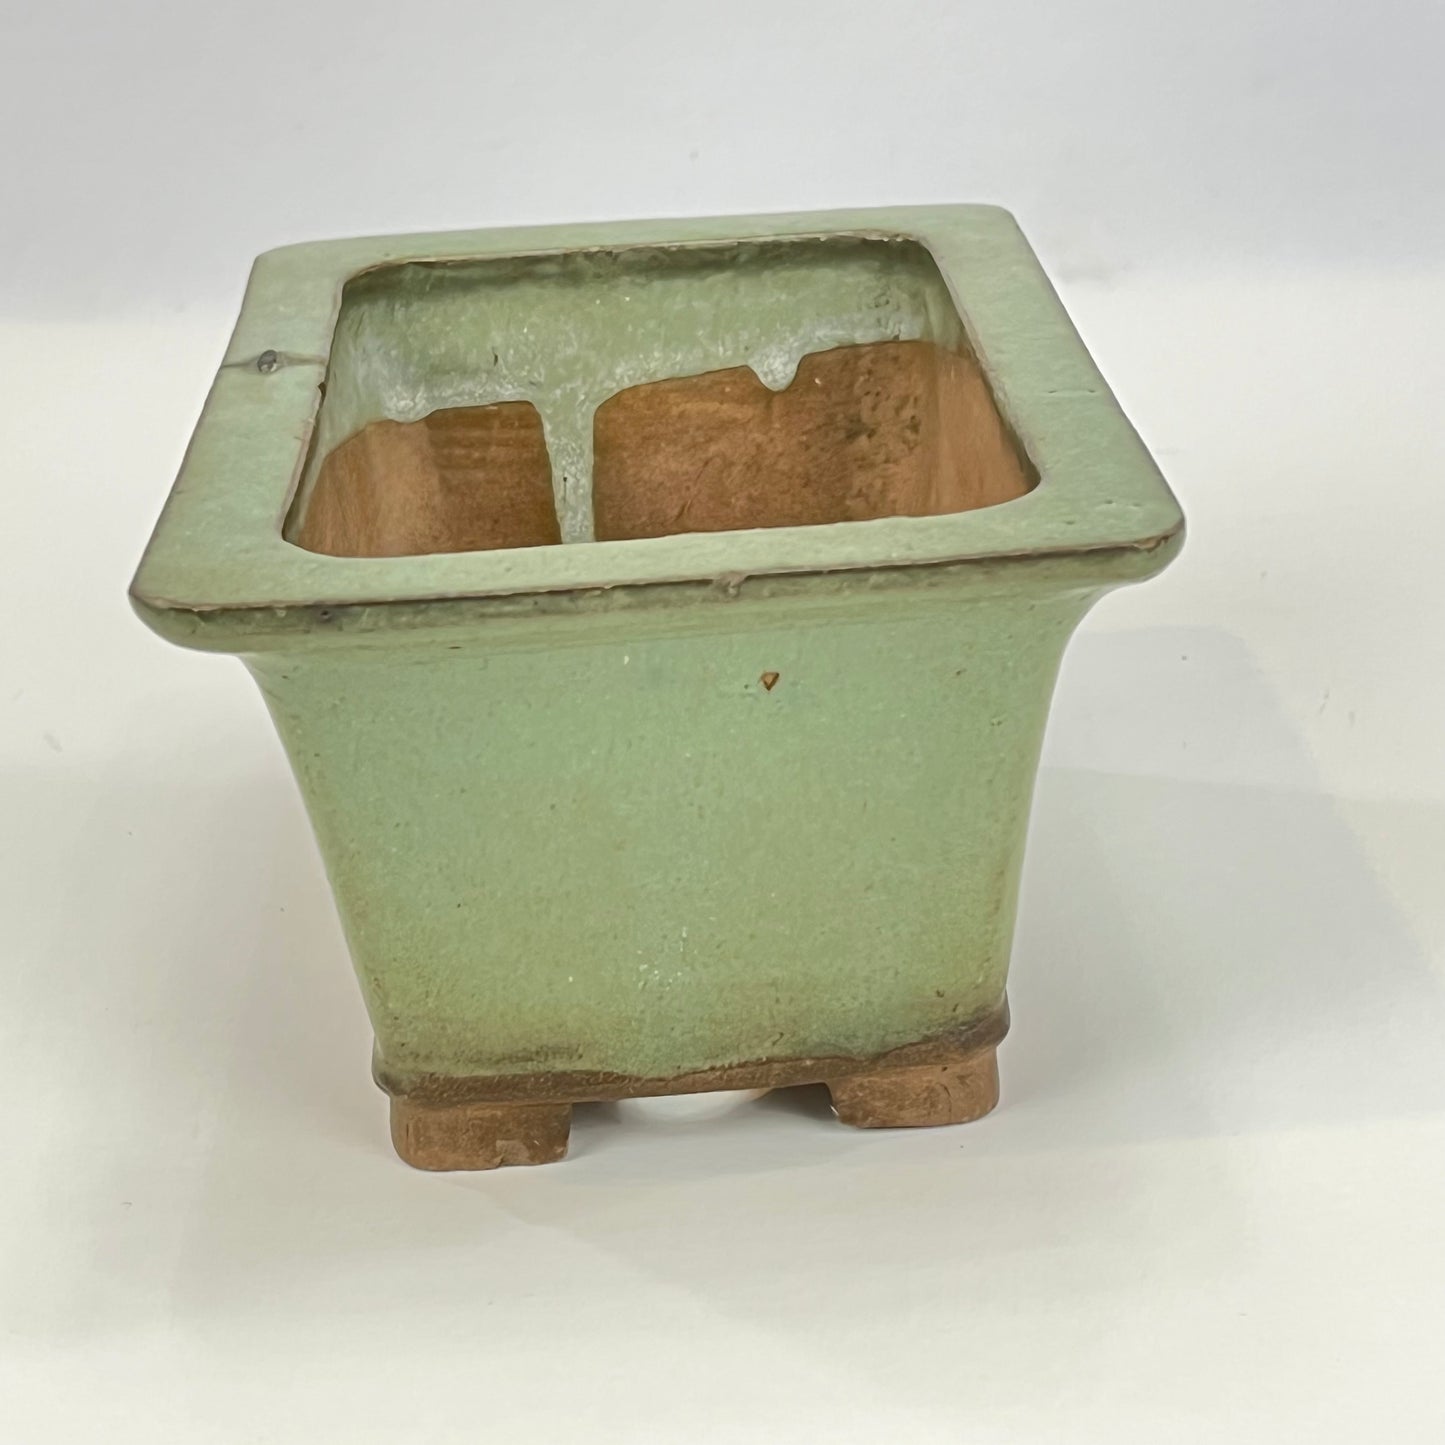 Japanese Bonsai Earthen Wear Celadon Green Bonsai Pot w/ Staples Small Trees 4.5"